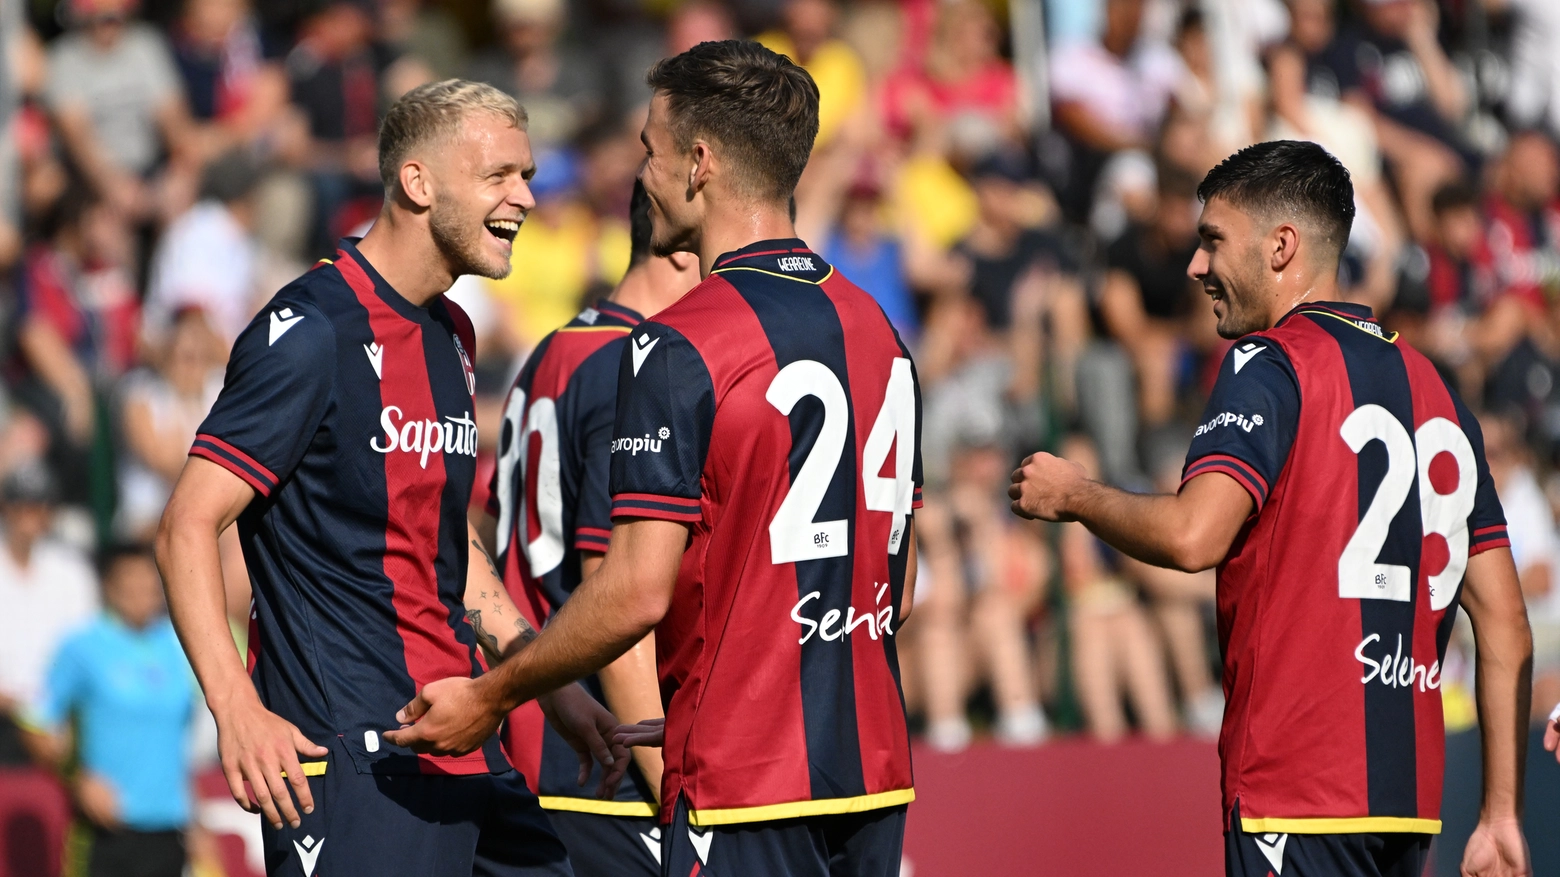 Dallinga festeggia il suo primo gol in rossoblù durante la seconda amichevole del ritiro a Valles (foto Schicchi)